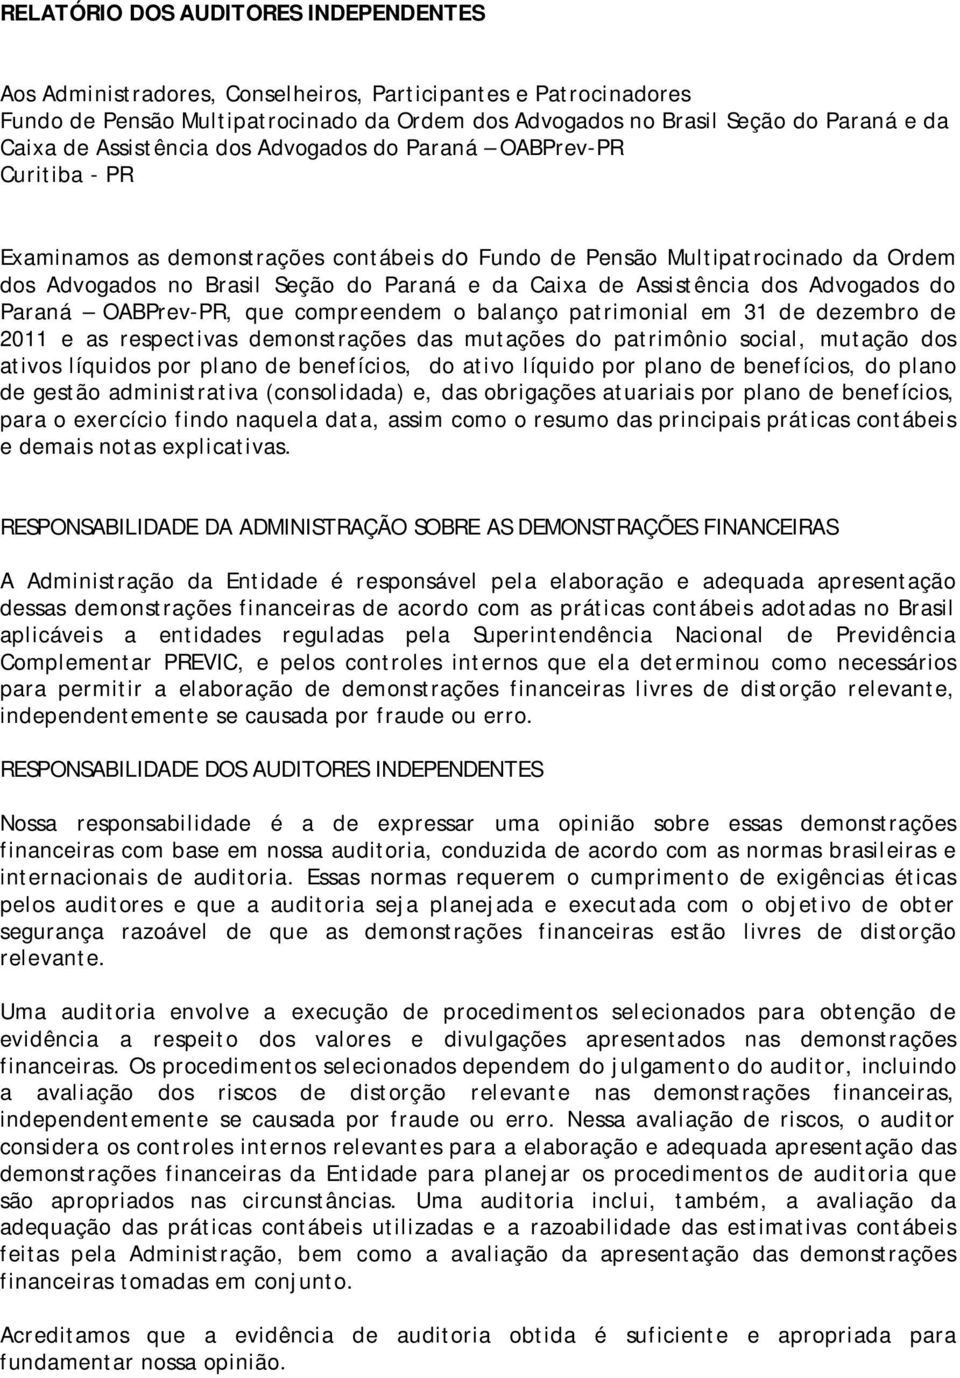 Assistência dos Advogados do Paraná OABPrev-PR, que compreendem o balanço patrimonial em 31 de dezembro de 2011 e as respectivas demonstrações das mutações do patrimônio social, mutação dos ativos